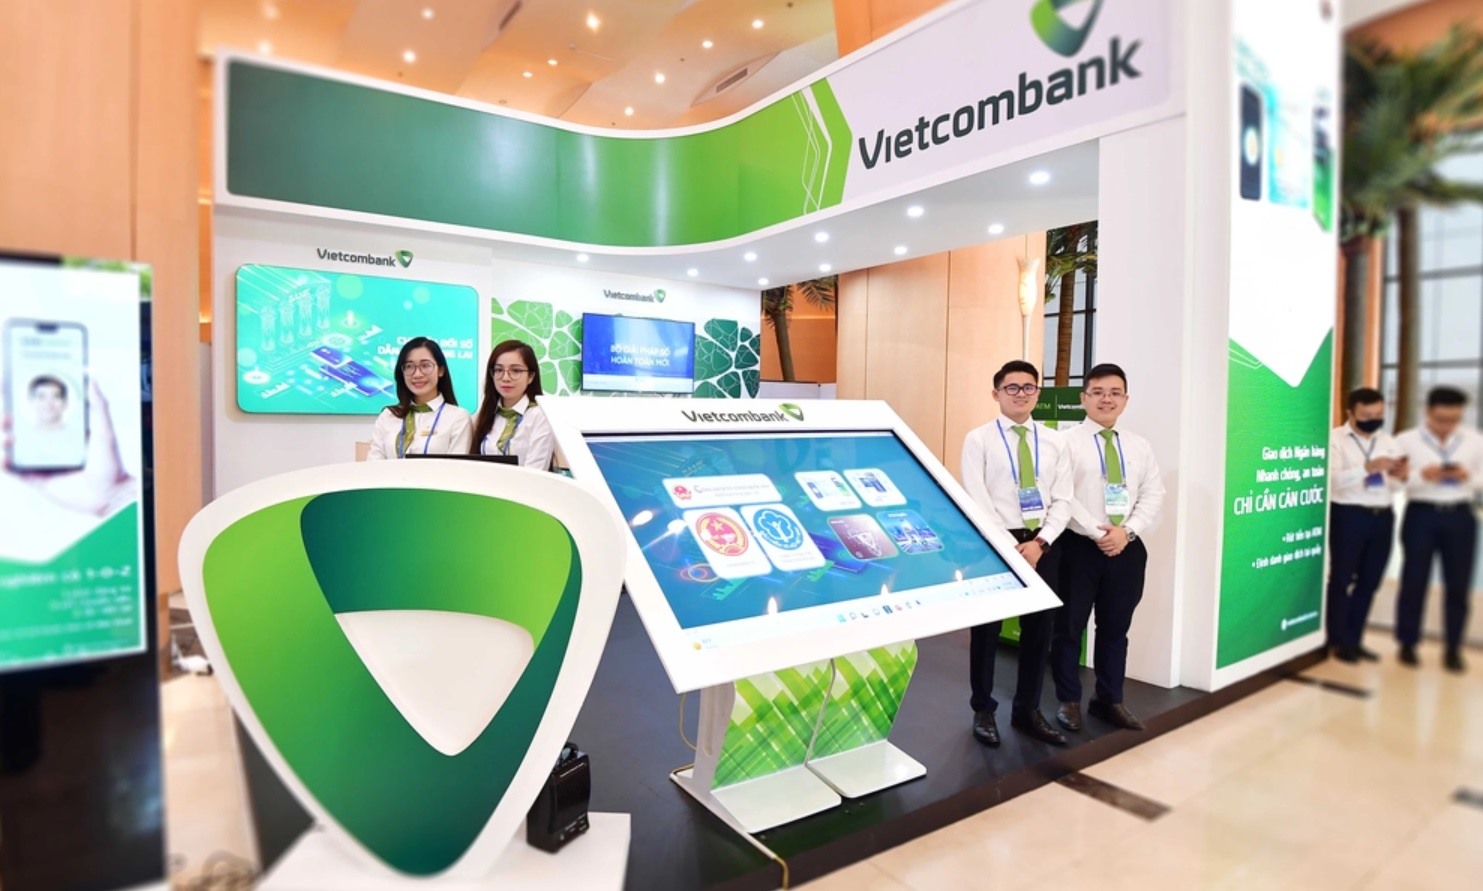 Vietcombank hiện đứng trong số 100 ngân hàng niêm yết có quy mô vốn hóa lớn nhất toàn cầu (18,5 tỉ USD). Ảnh: Vietcombank